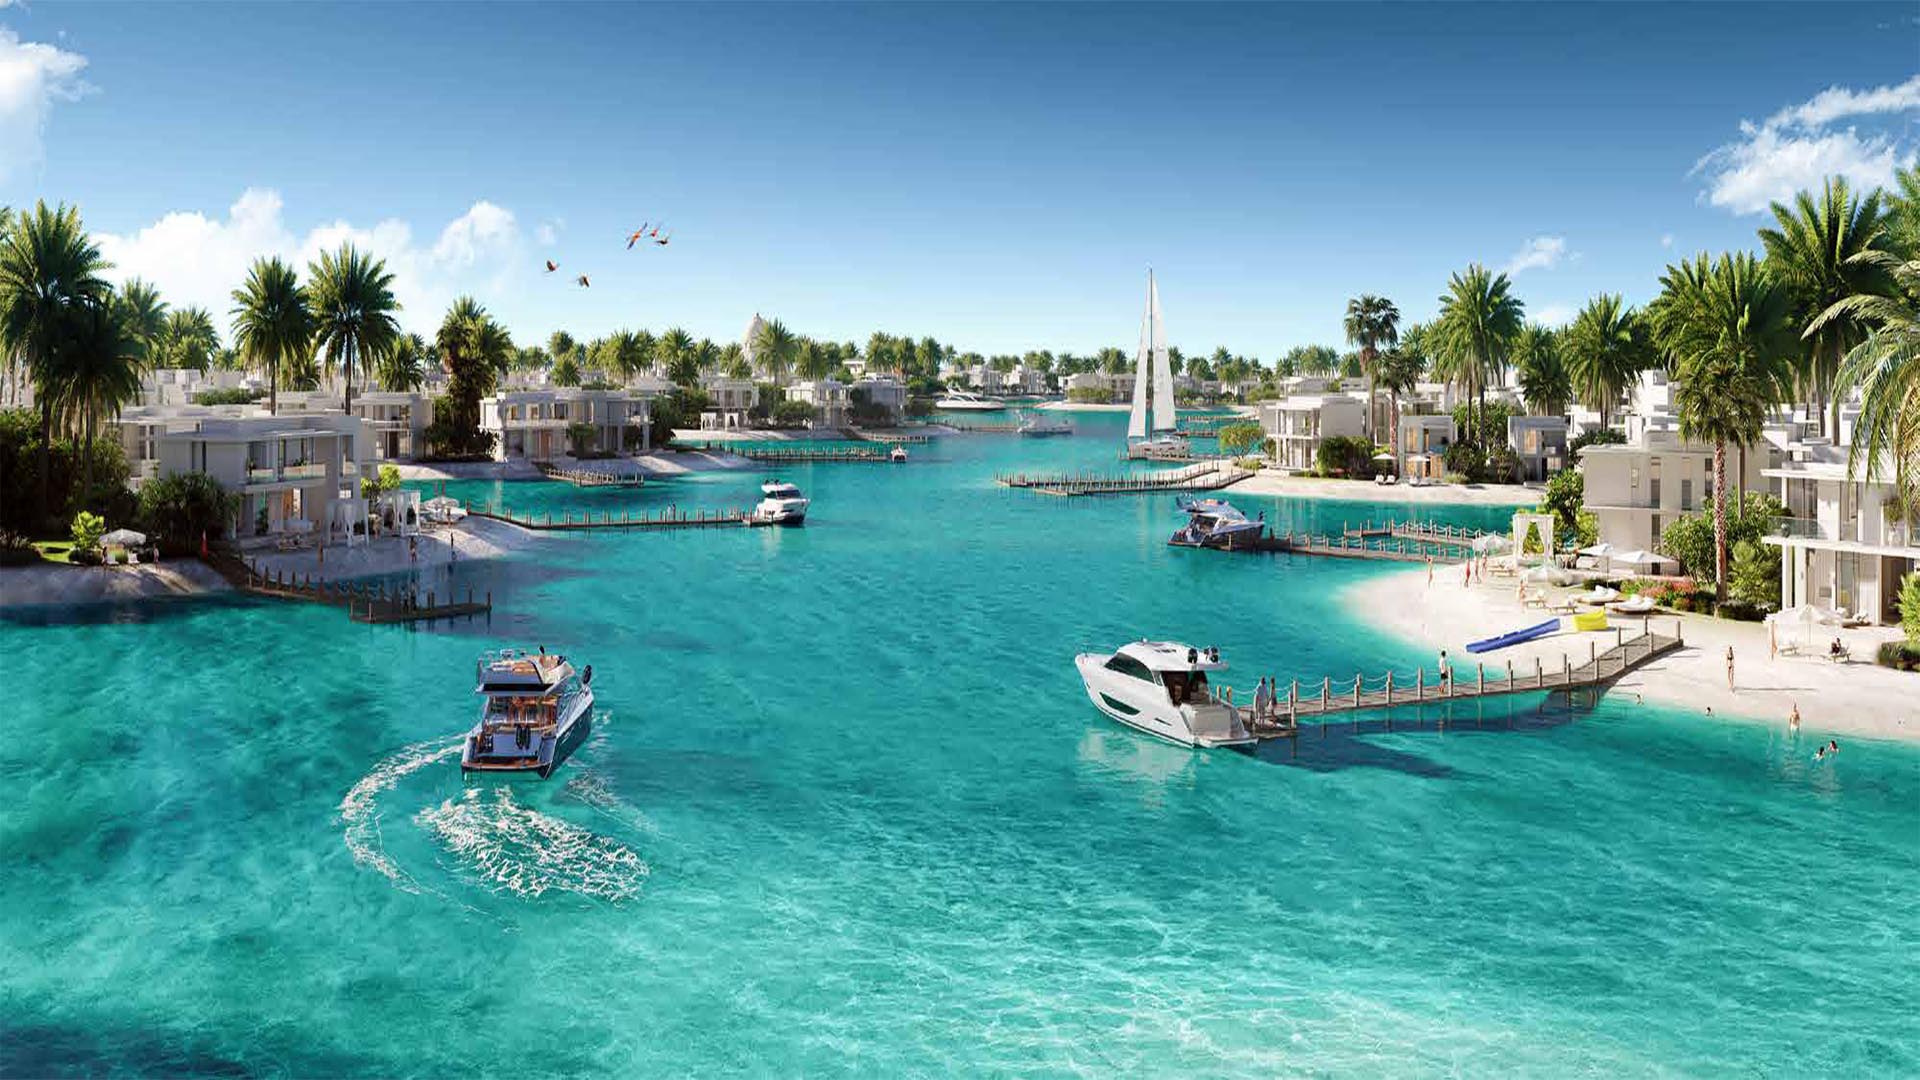 Ramhan Island Villas - Abu Dhabi.